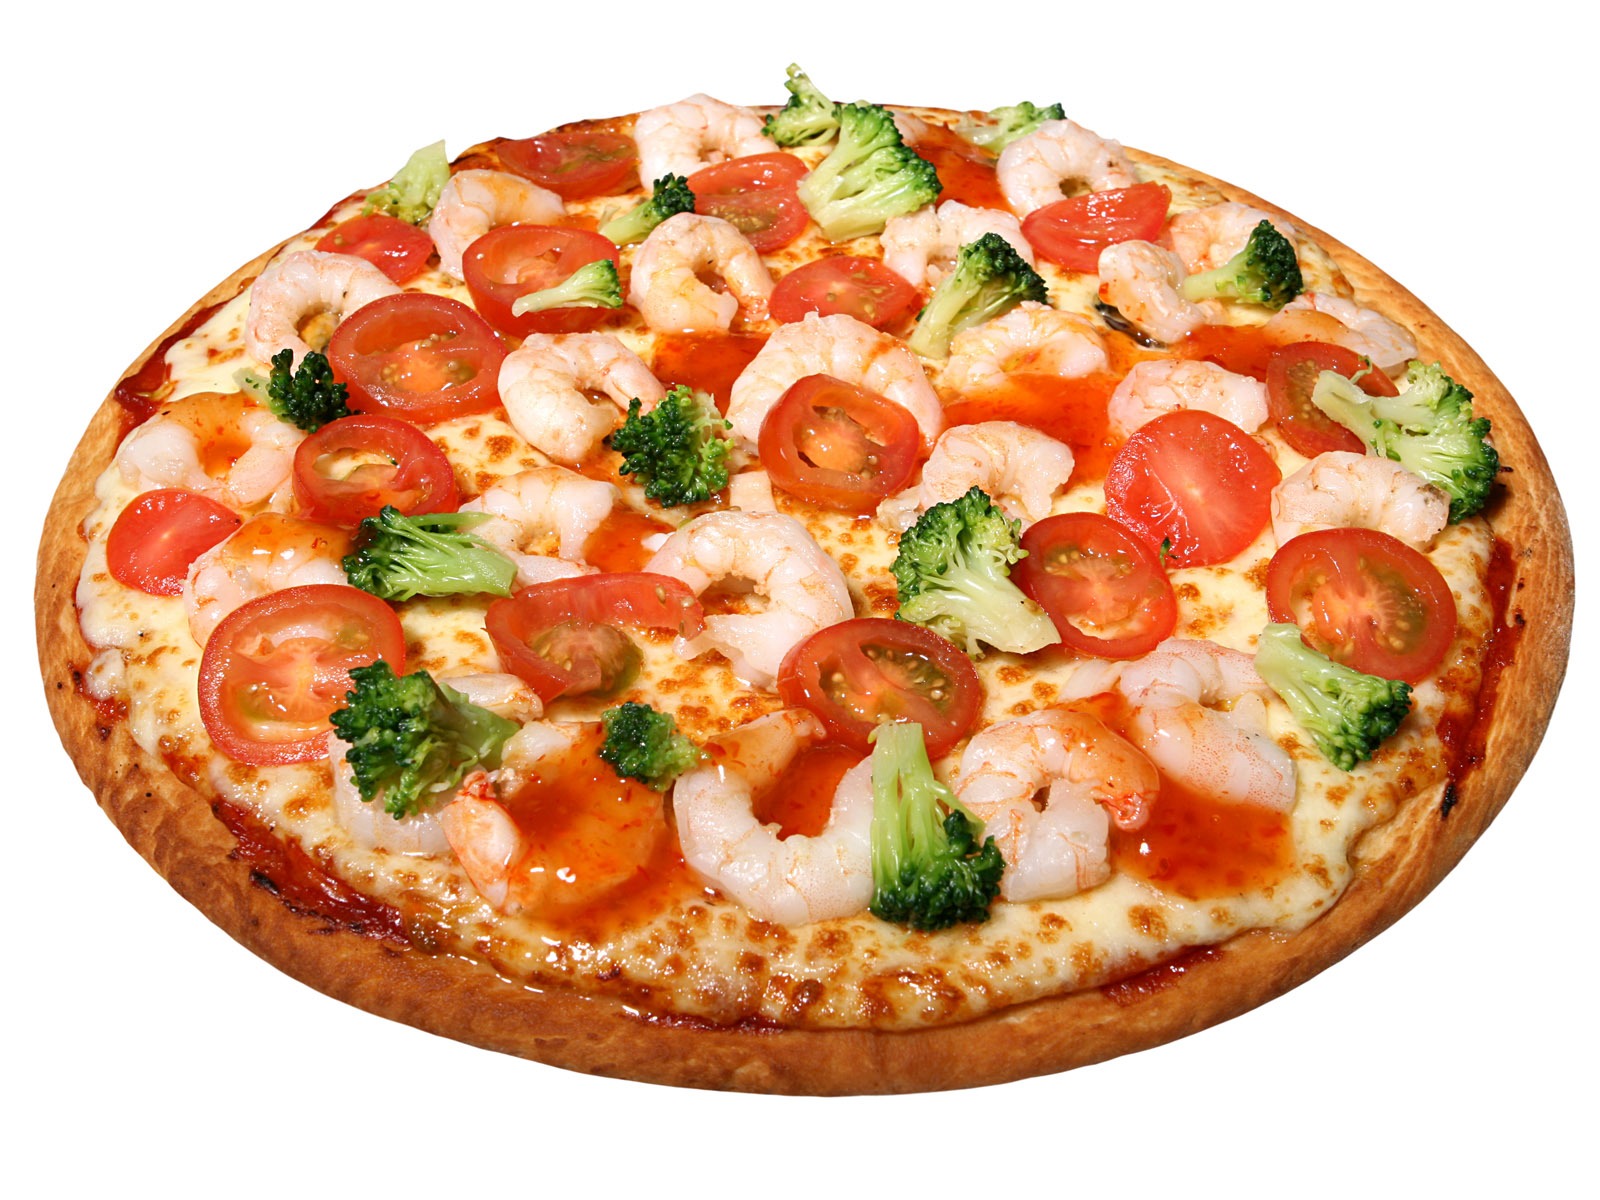 Fondos de pizzerías de Alimentos (4) #13 - 1600x1200